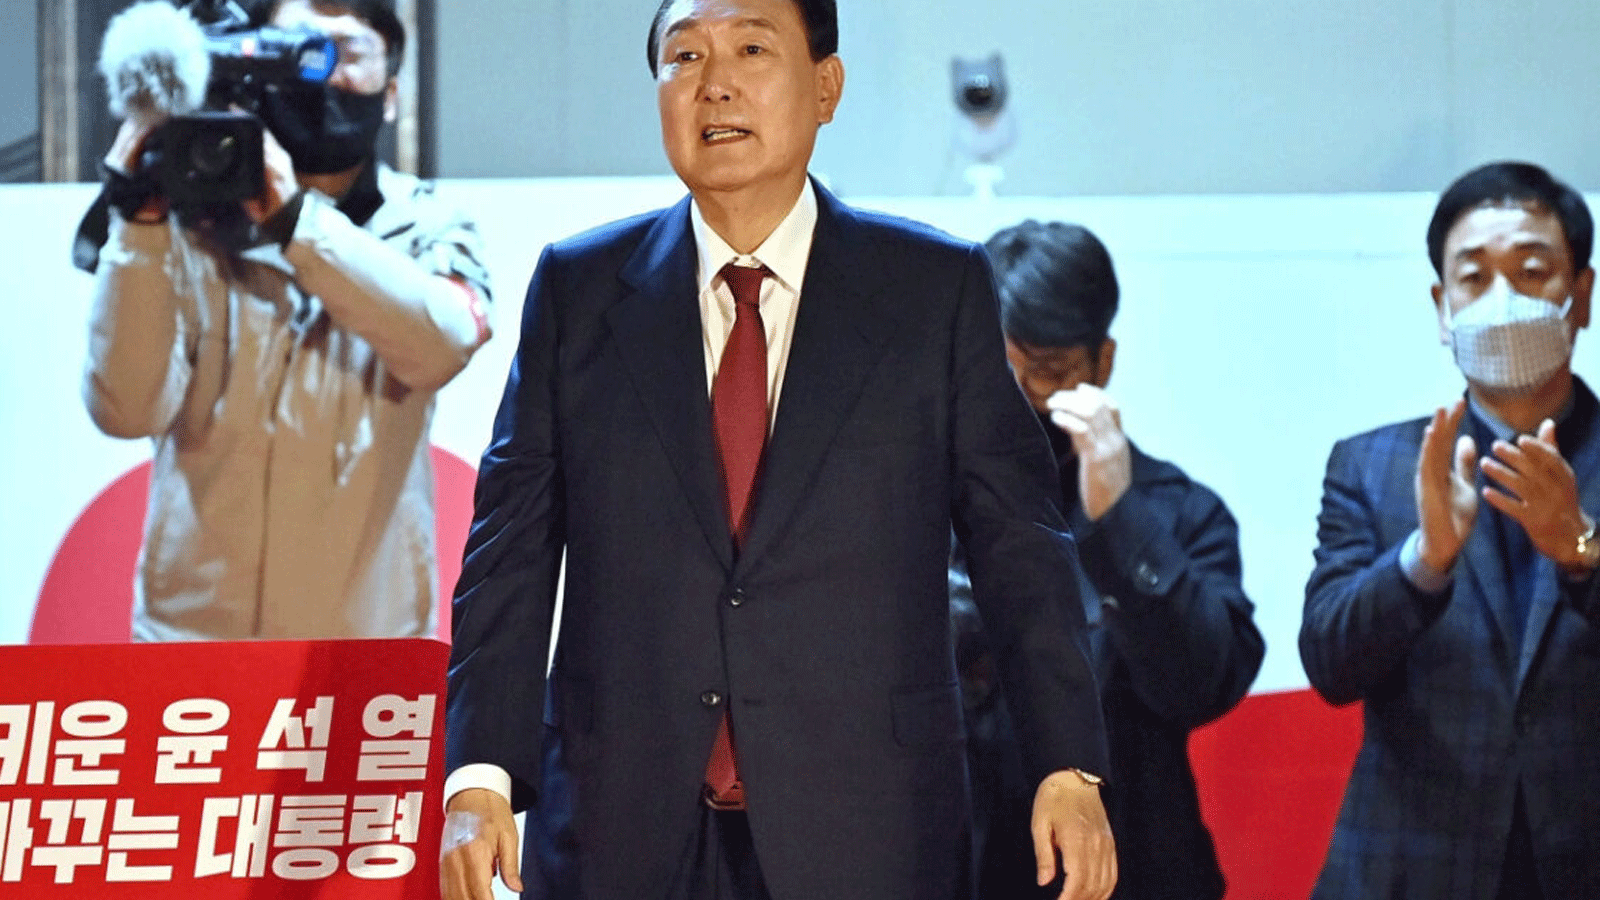  رئيس كوريا الجنوبية الجديد، يون سوك يول، خارج المقر الرئيسي لحزب سلطة الشعب في سيول